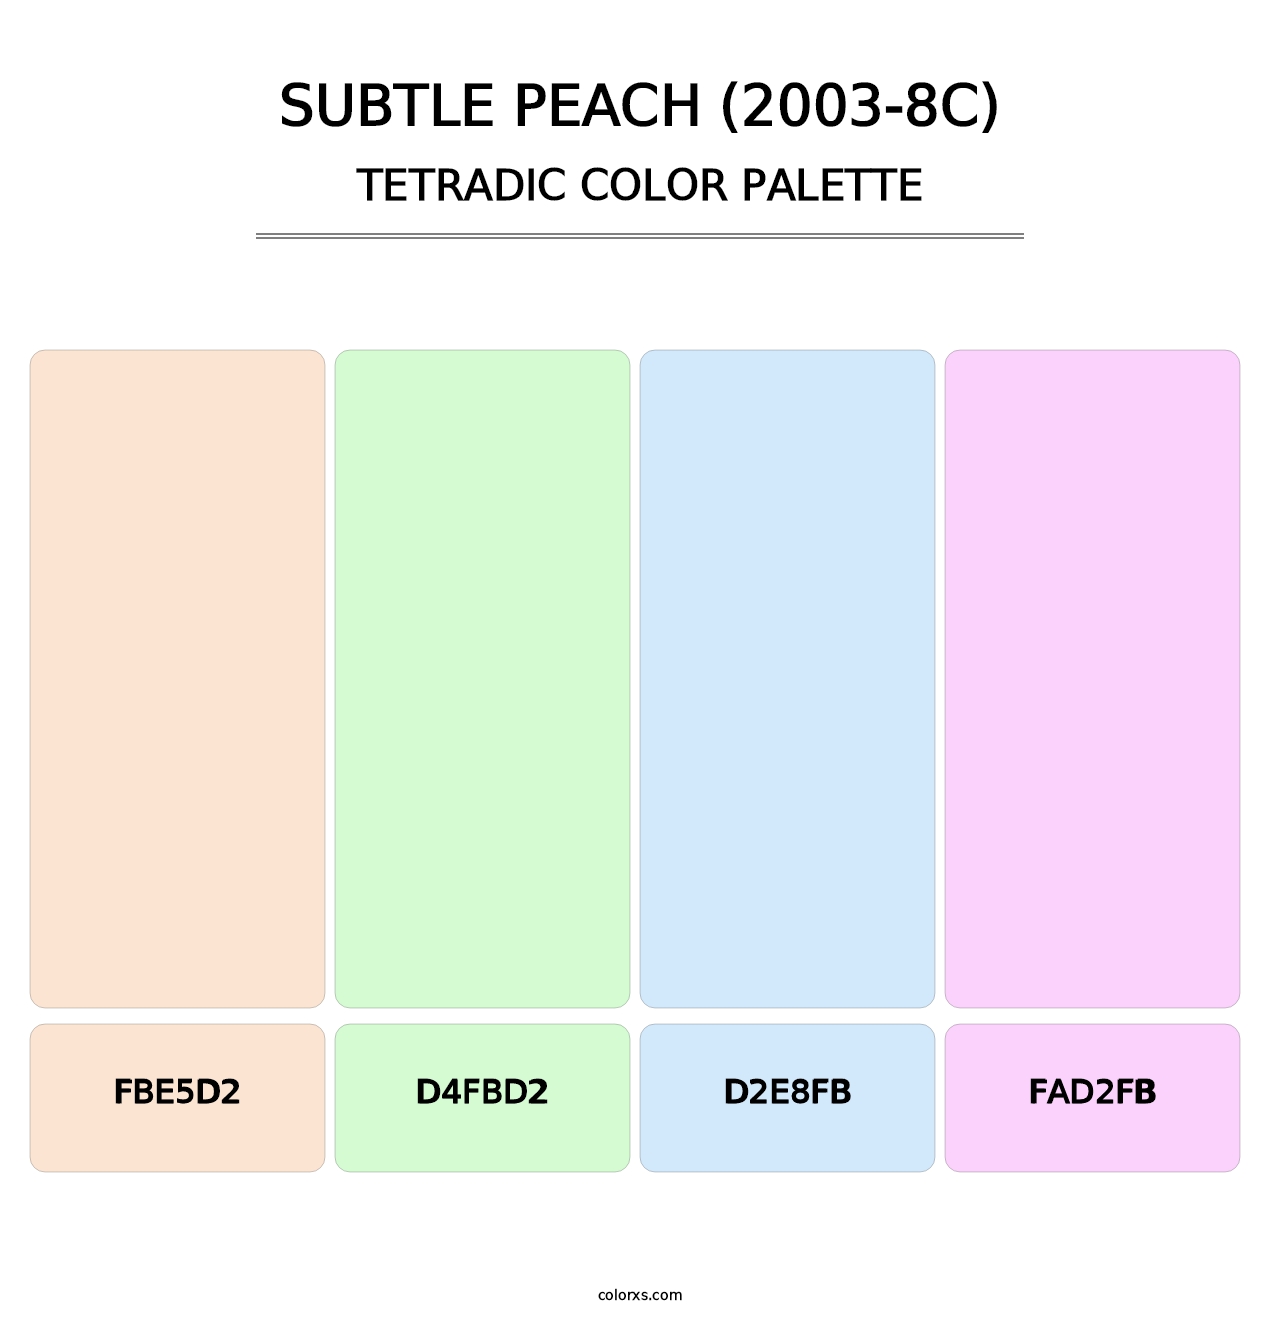 Subtle Peach (2003-8C) - Tetradic Color Palette